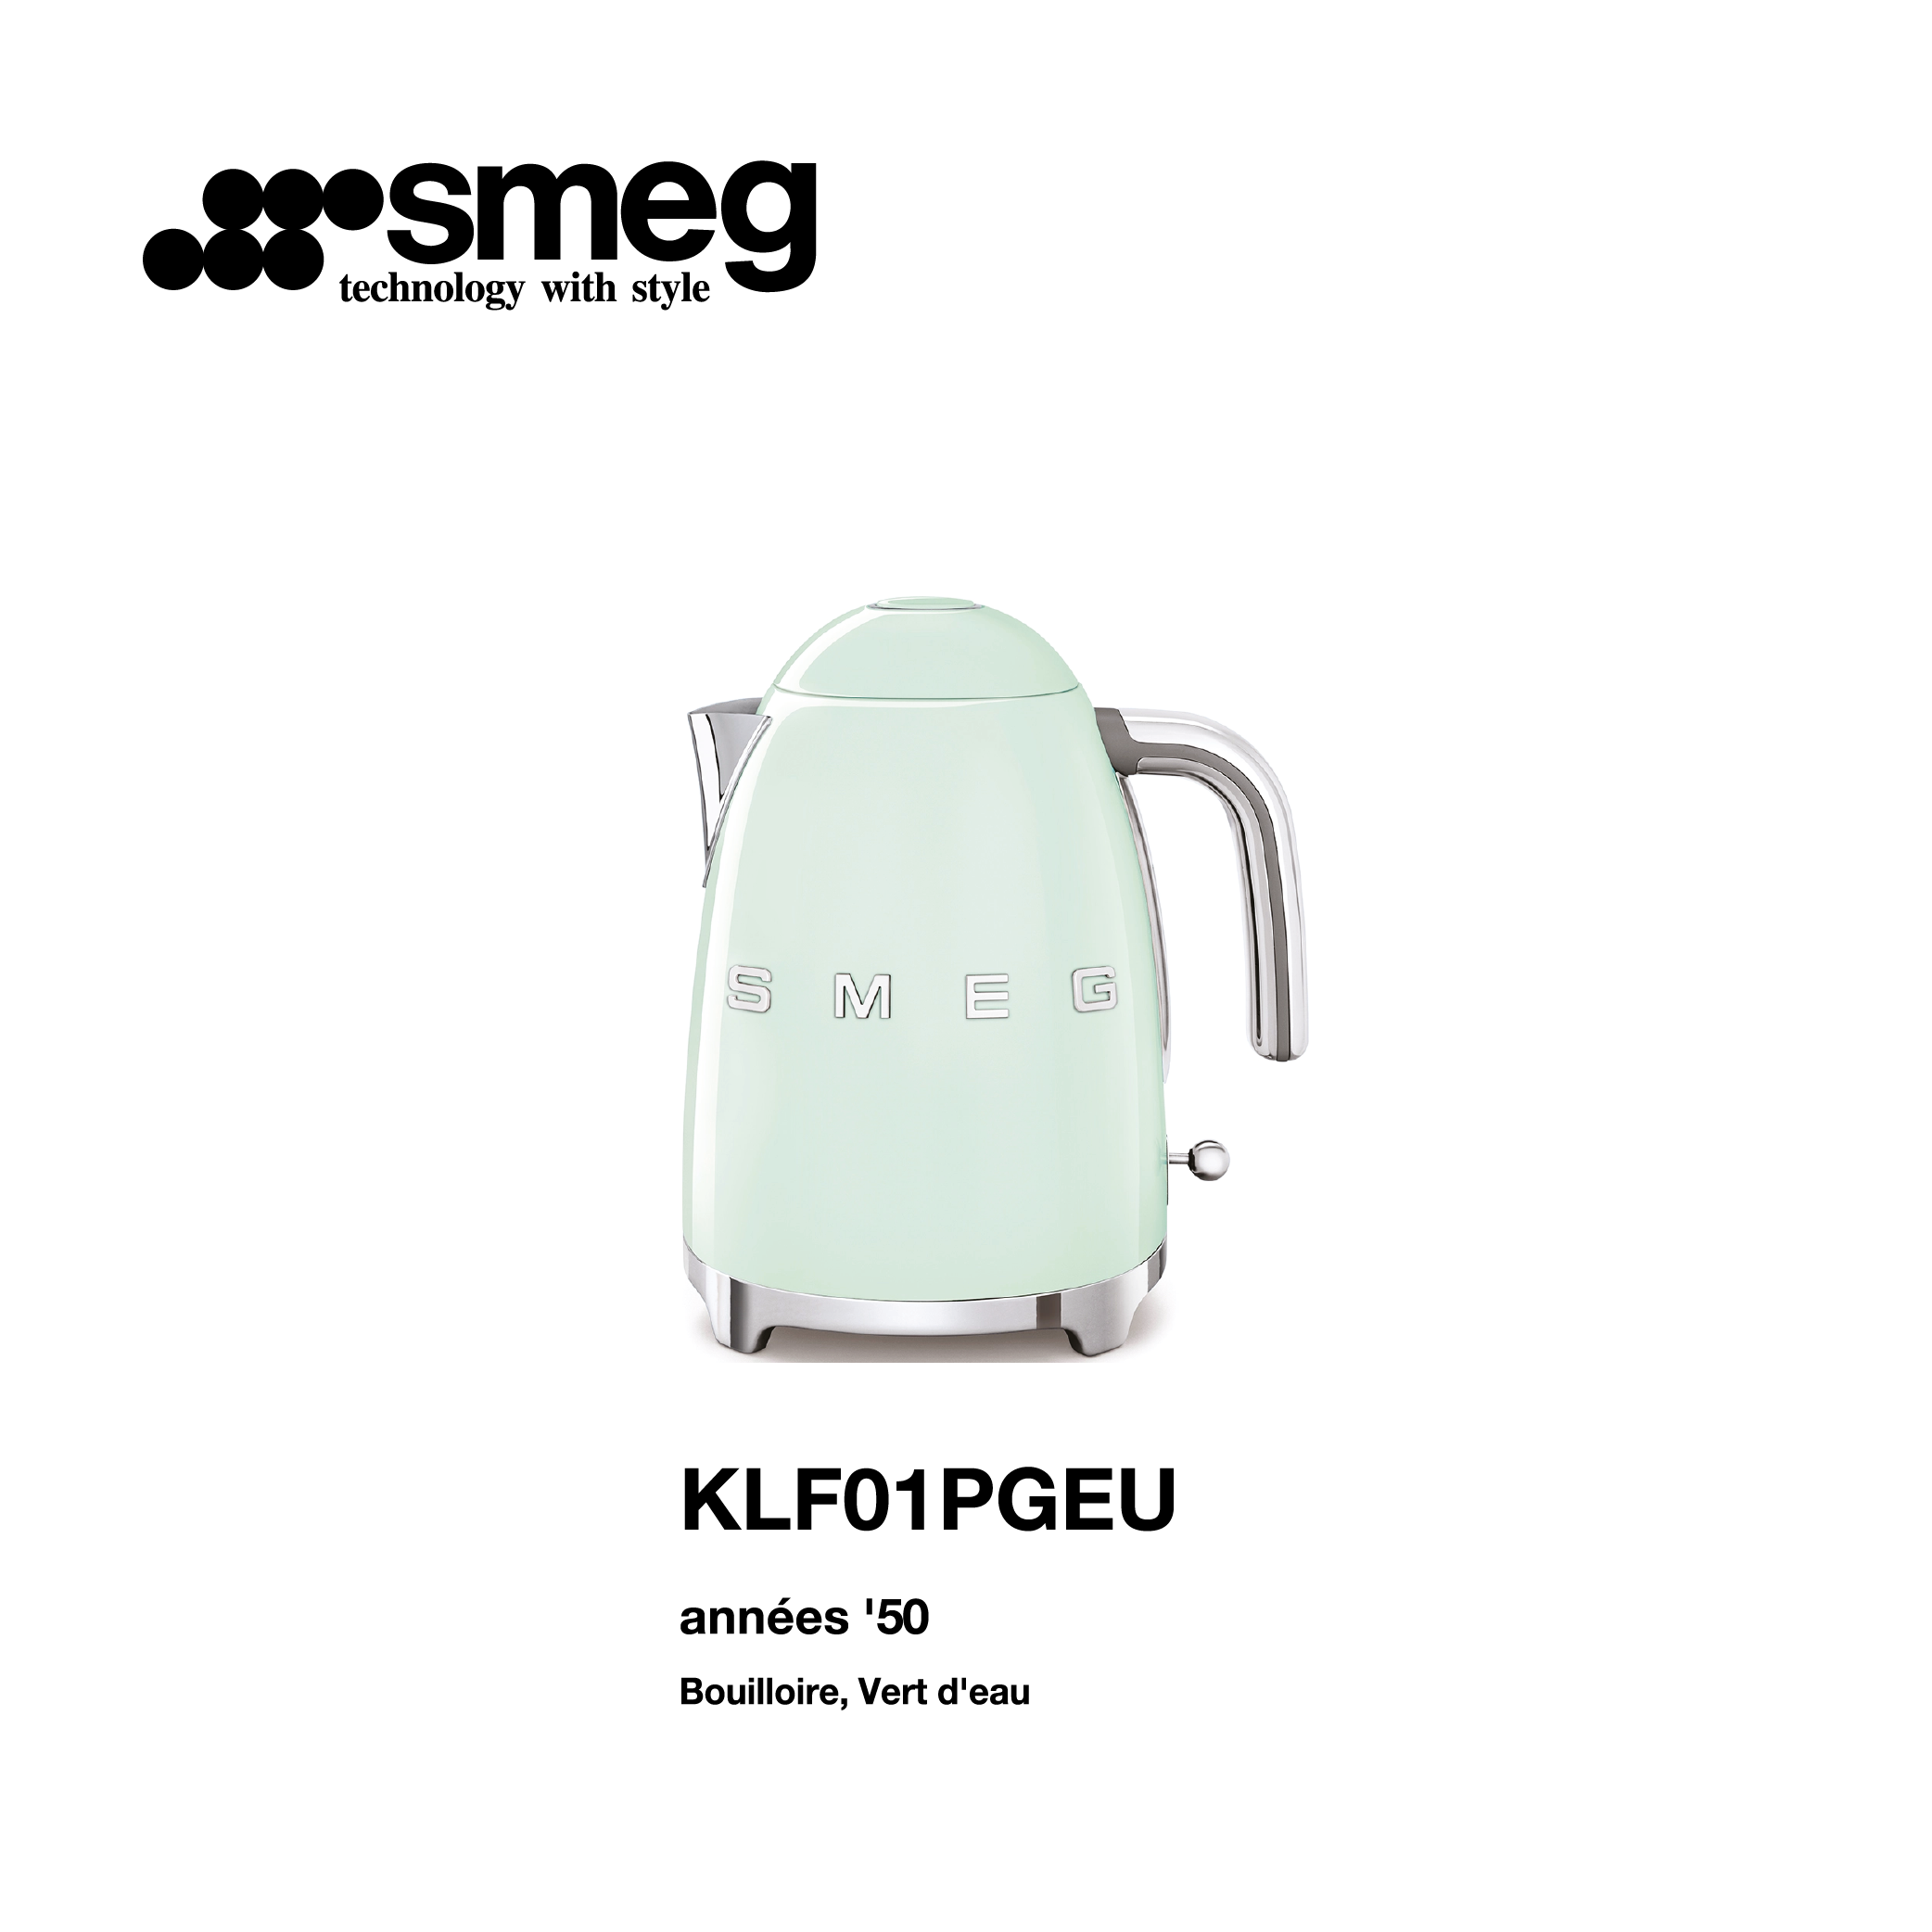 bouilloire électrique smeg style vintage couleur vert d’eau KLF01PGEU